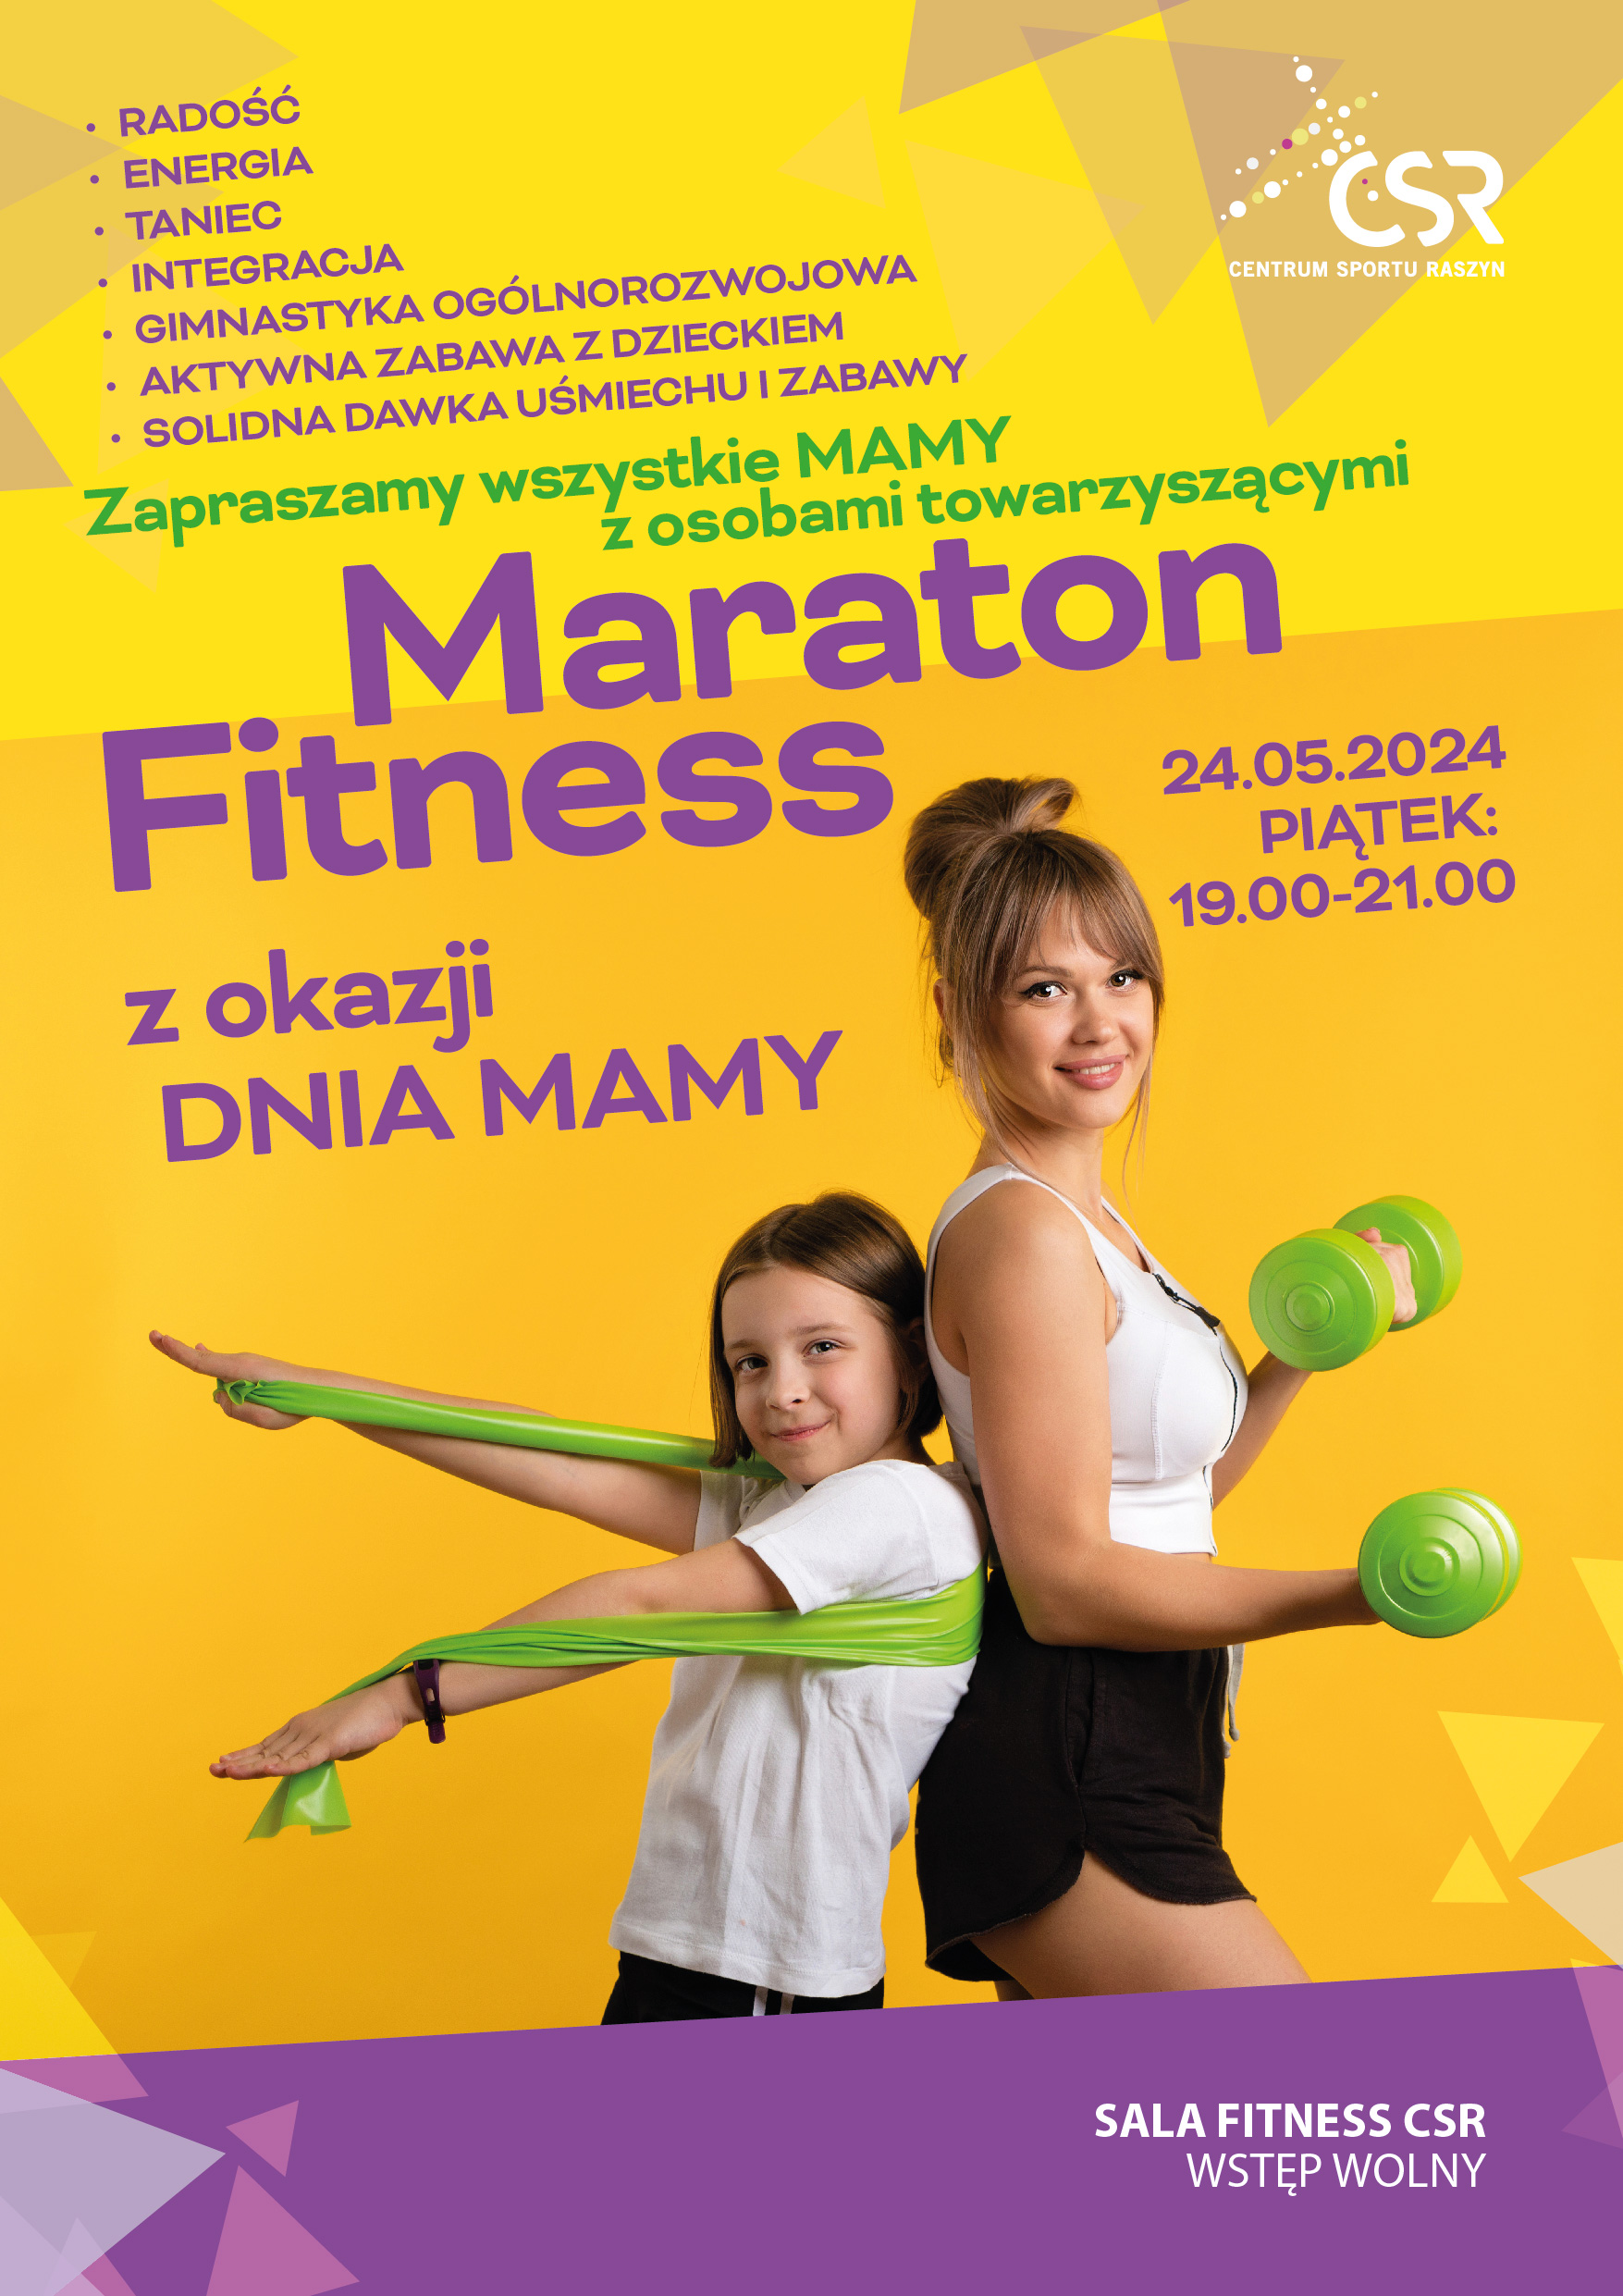 Maraton Fitness z okazji Dnia Mamy